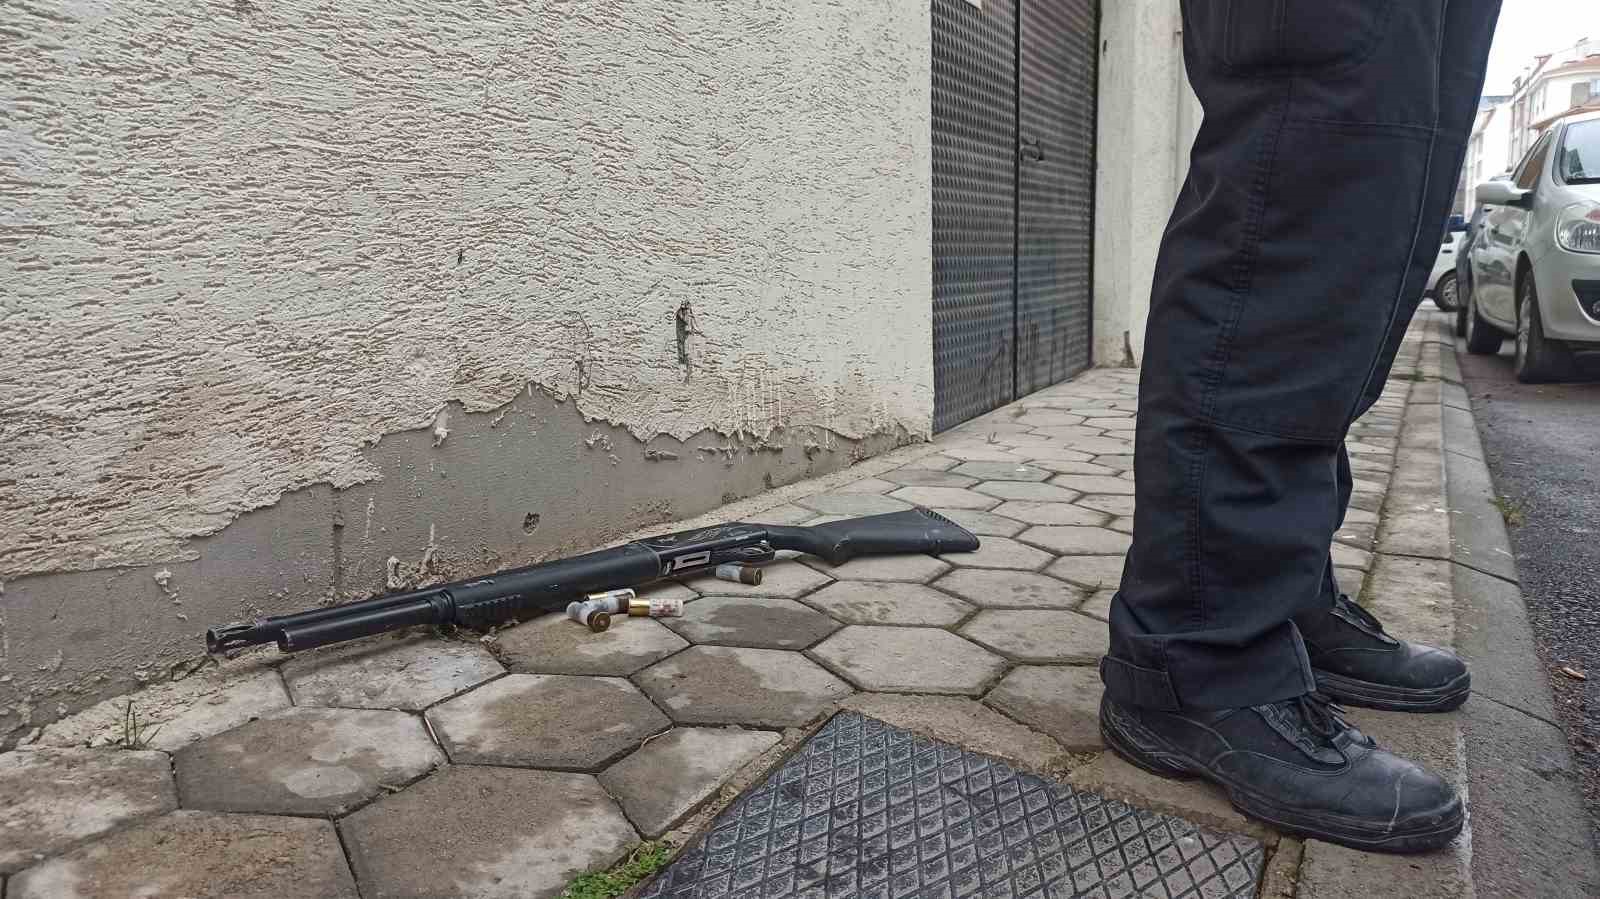 Eskişehir’de aksiyon filmlerini aratmayan kovalamaca; 1 polis memuru yaralı